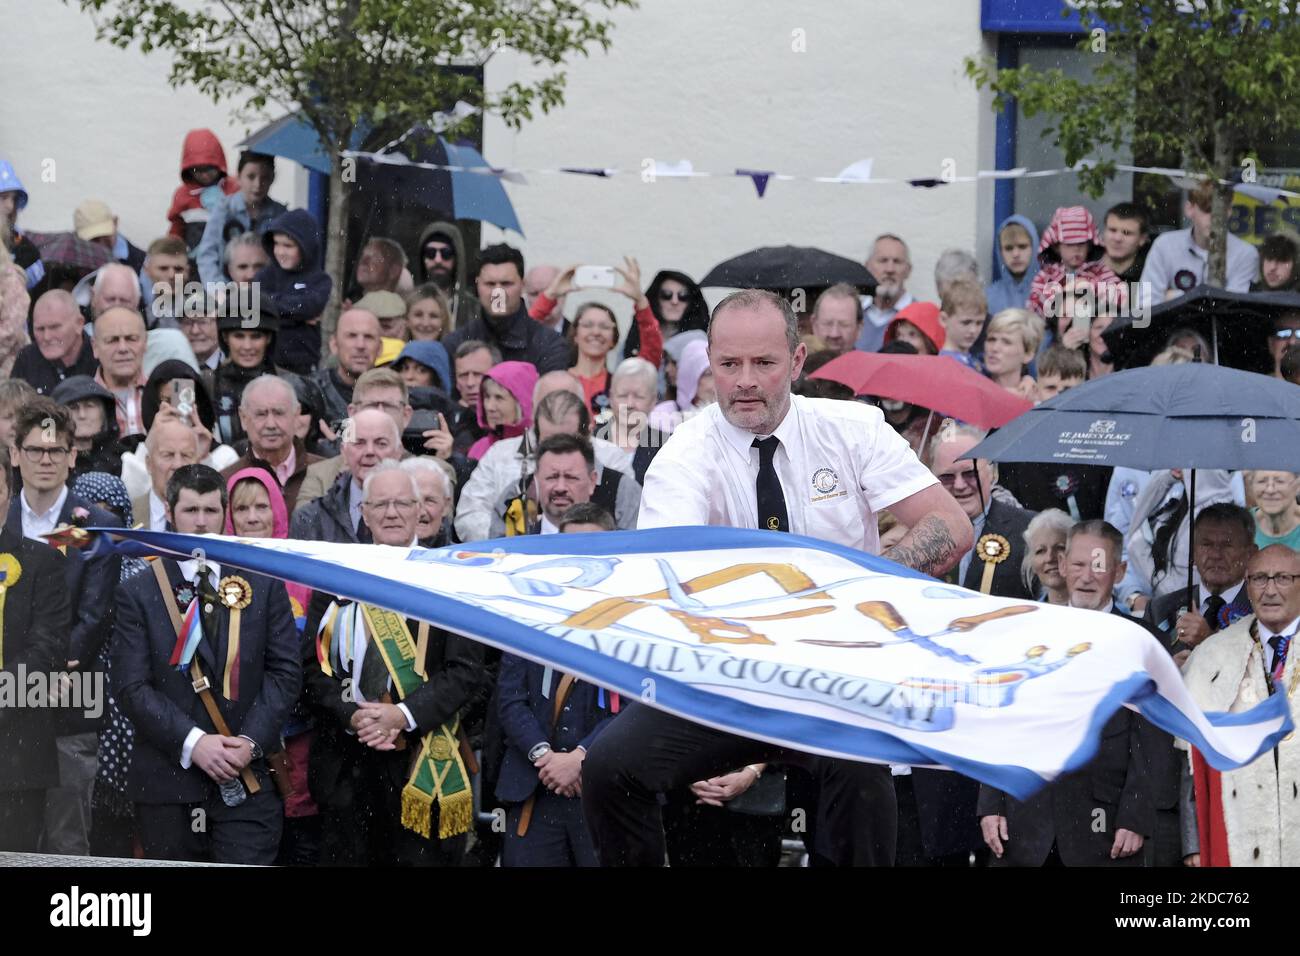 Selkirk incorporation de Hammermen, M. Neil Purves. Casting du drapeau de ses associations (Standard) pendant la commune de la ville, l'un des plus anciens festivals de frontières, sur 17 juin 2022 à Selkirk, en Écosse. L'événement, qui date de la bataille de Flodden en 1513, se souvient de l'histoire de Flodden, quand Selkirk envoya 80 hommes au combat avec le roi écossais. Un homme est retourné, portant un drapeau anglais taché de sang. Le point culminant de la journée implique le porteur standard et les métiers d’art et associations les porteurs standard de la ville qui jettent leurs couleurs sur l’ancien marché de Selkirk. (Photo de Rob Gray/nu Banque D'Images